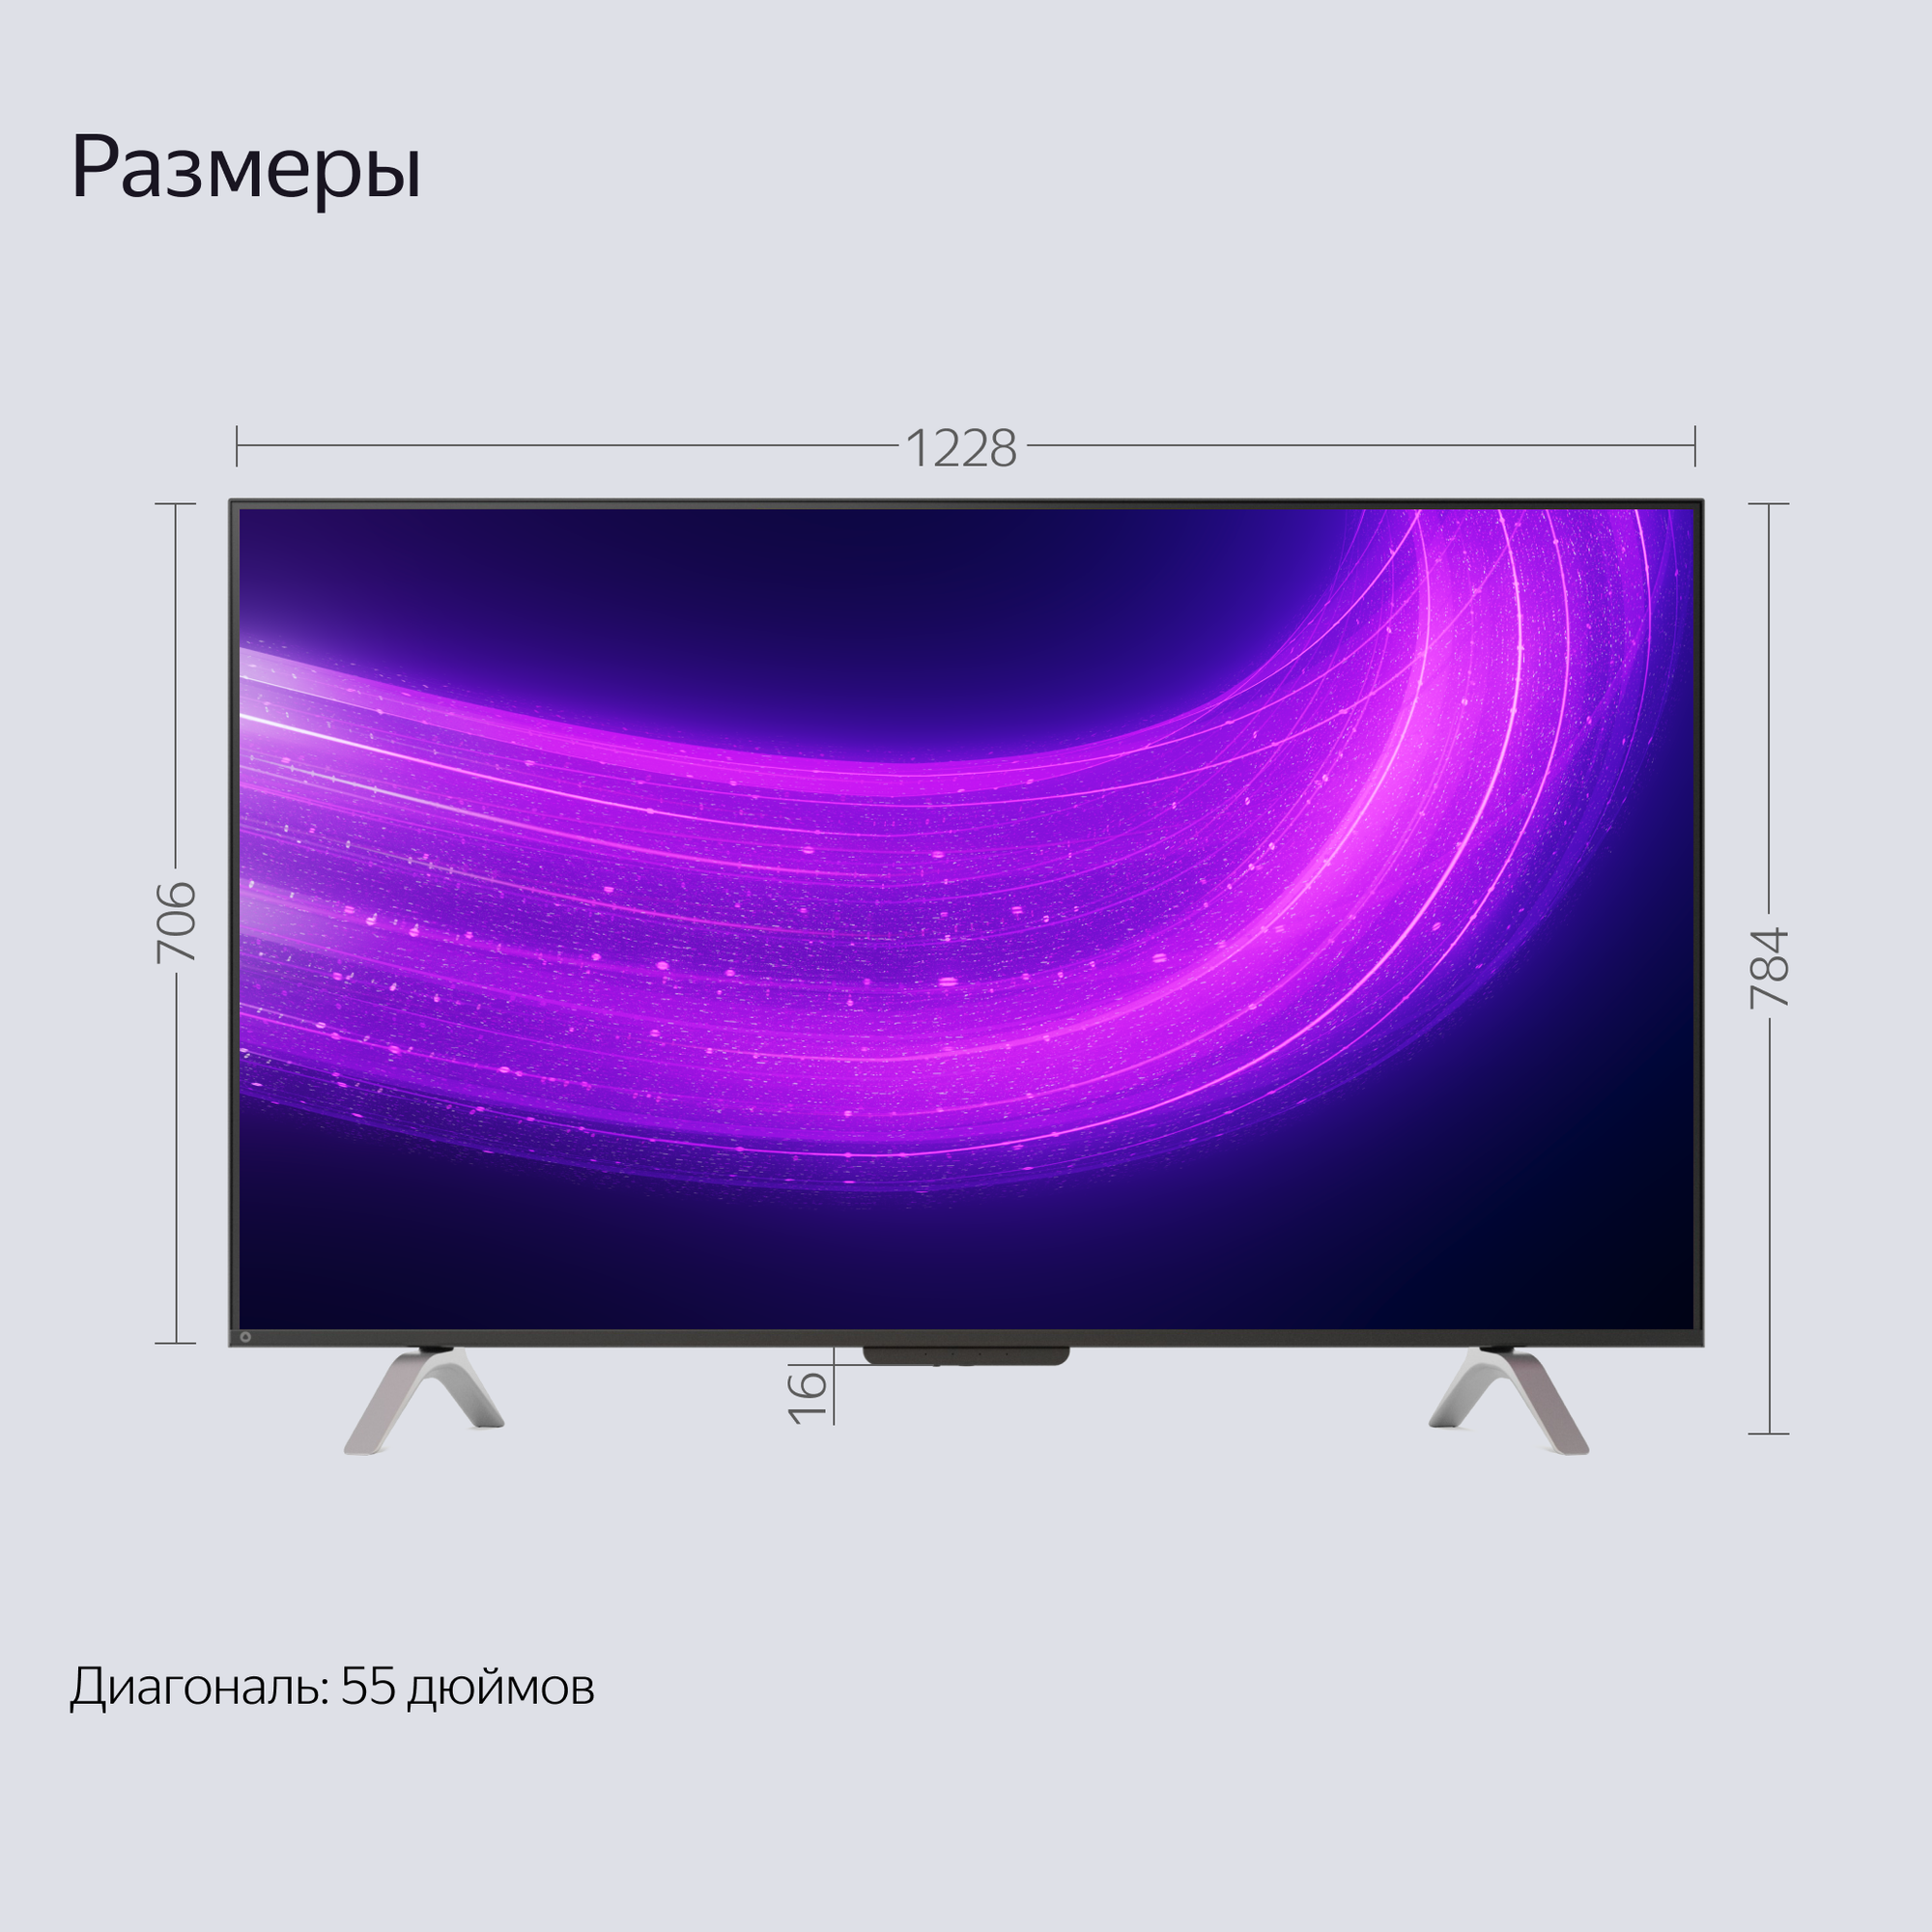 Яндекс ТВ Станция Про новый телевизор с Алисой на YandexGPT,  55“ 4K UHD, черный